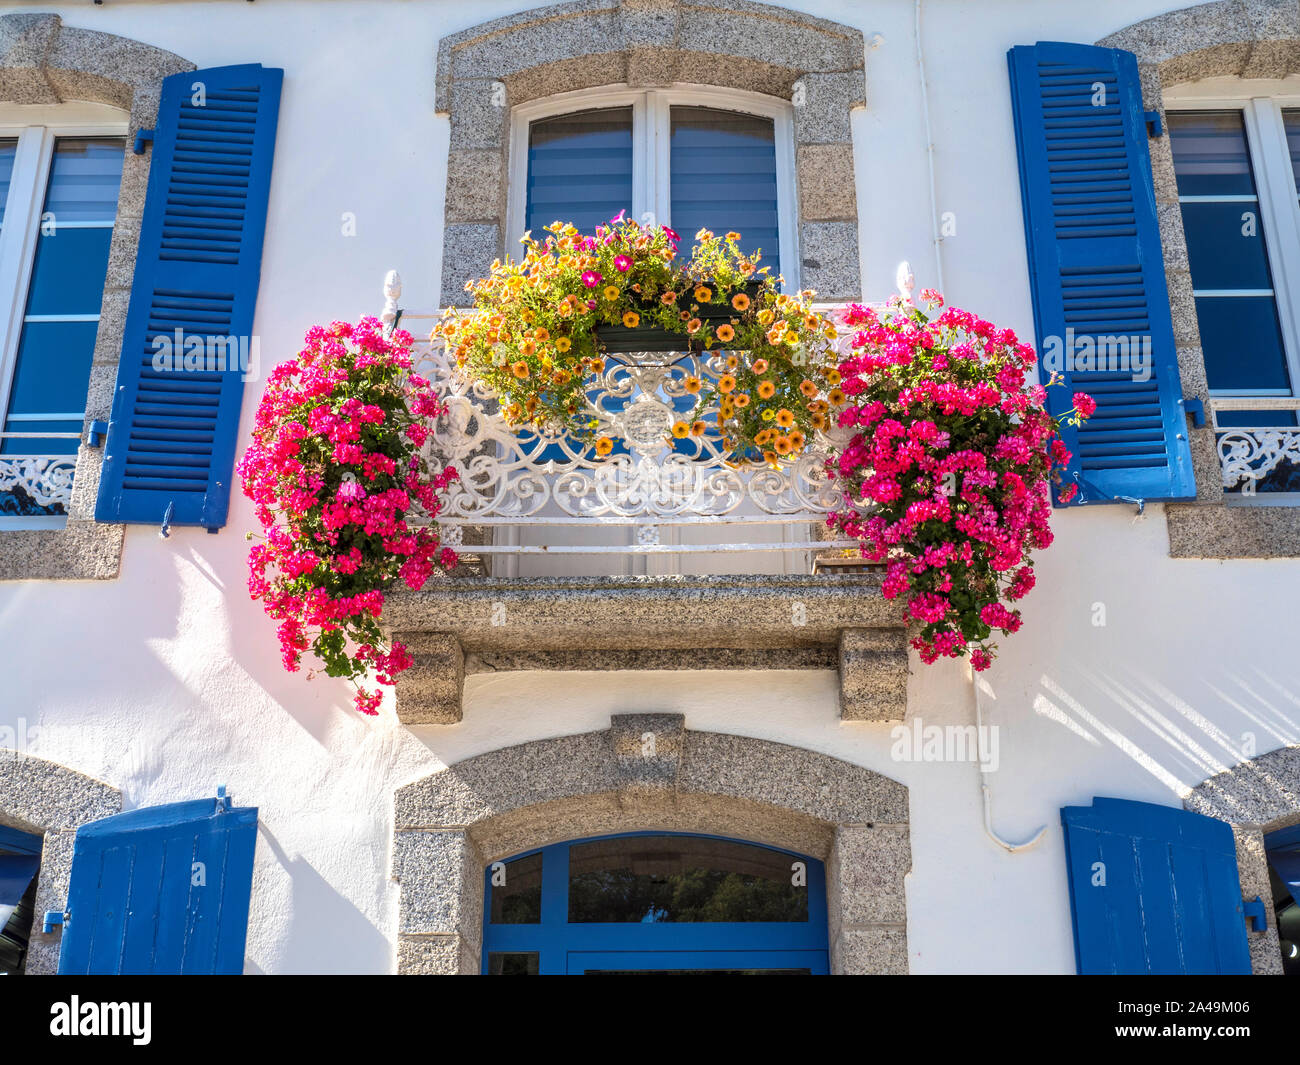 PONT AVEN Maison de Maître 'MANSION' avec d'abondantes fleurs colorées balcon et fenêtres à volets bleu traditionnel Pont Aven Bretagne France Banque D'Images